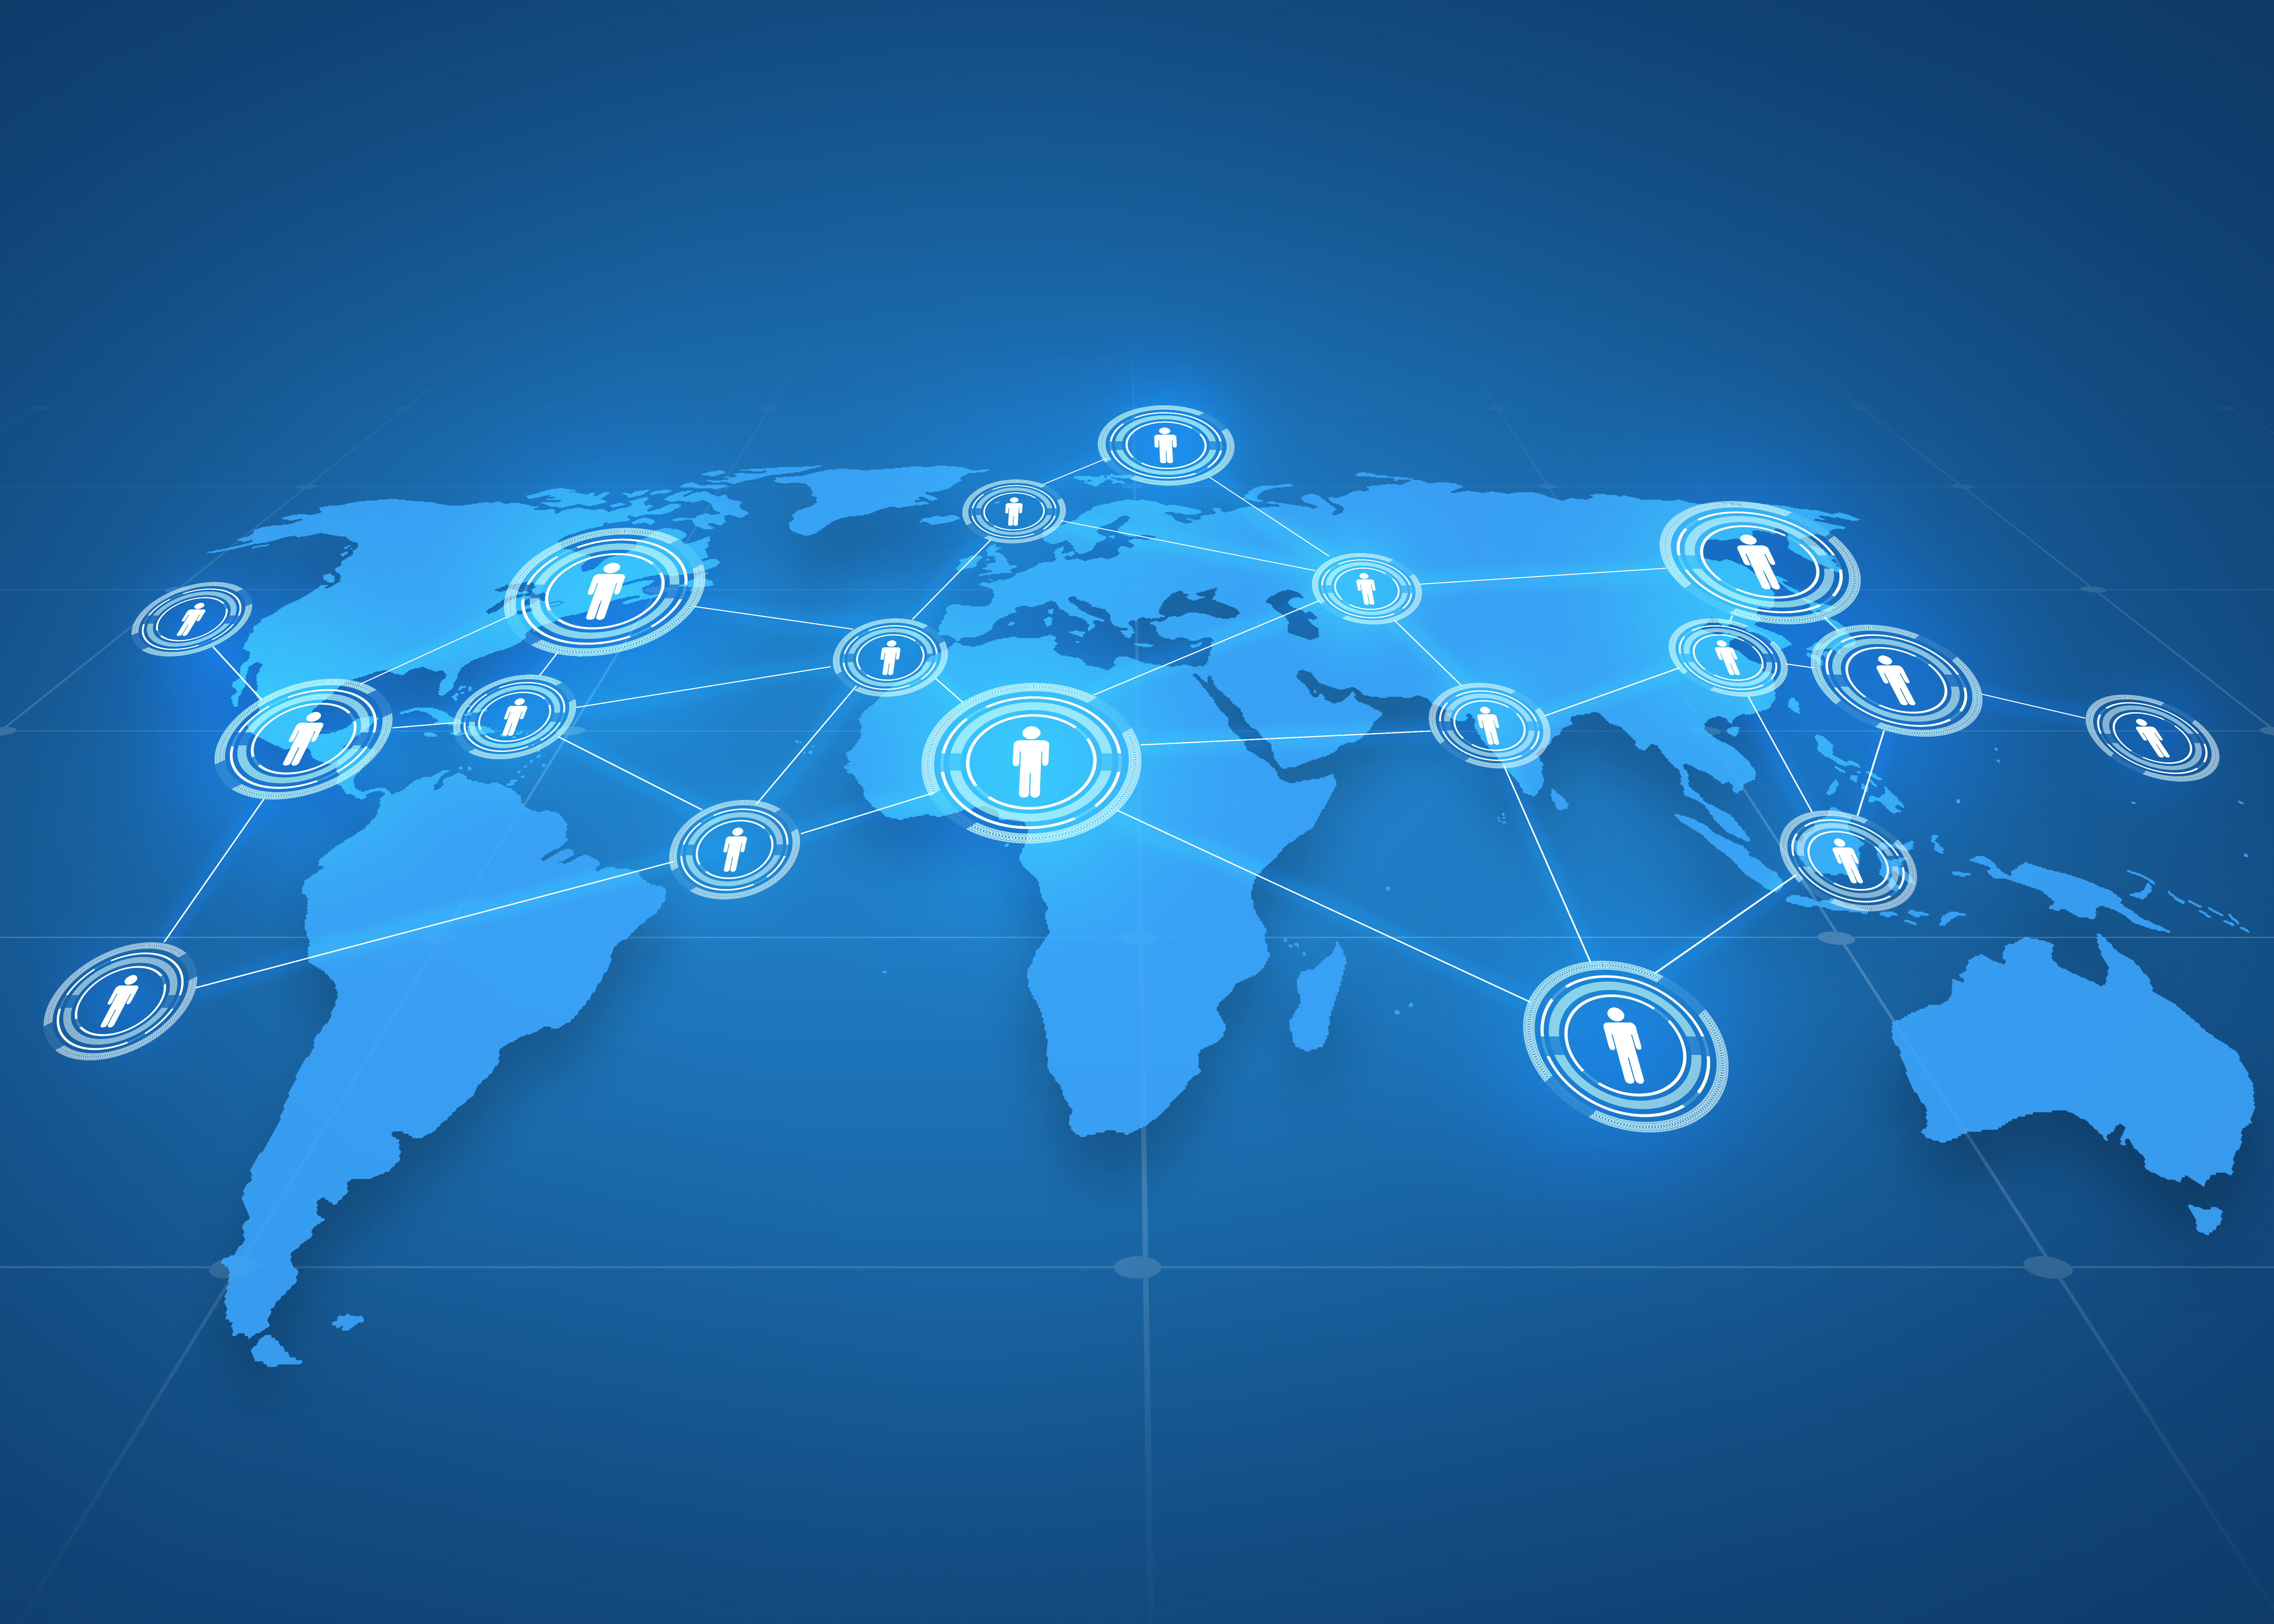 ธุรกิจระดับโลก เครือข่ายโซเชียล สื่อมวลชน และเทคโนโลยี ฉายภาพแผนที่โลกพร้อมไอคอนผู้คนบนพื้นหลังสีน้ำเงิน